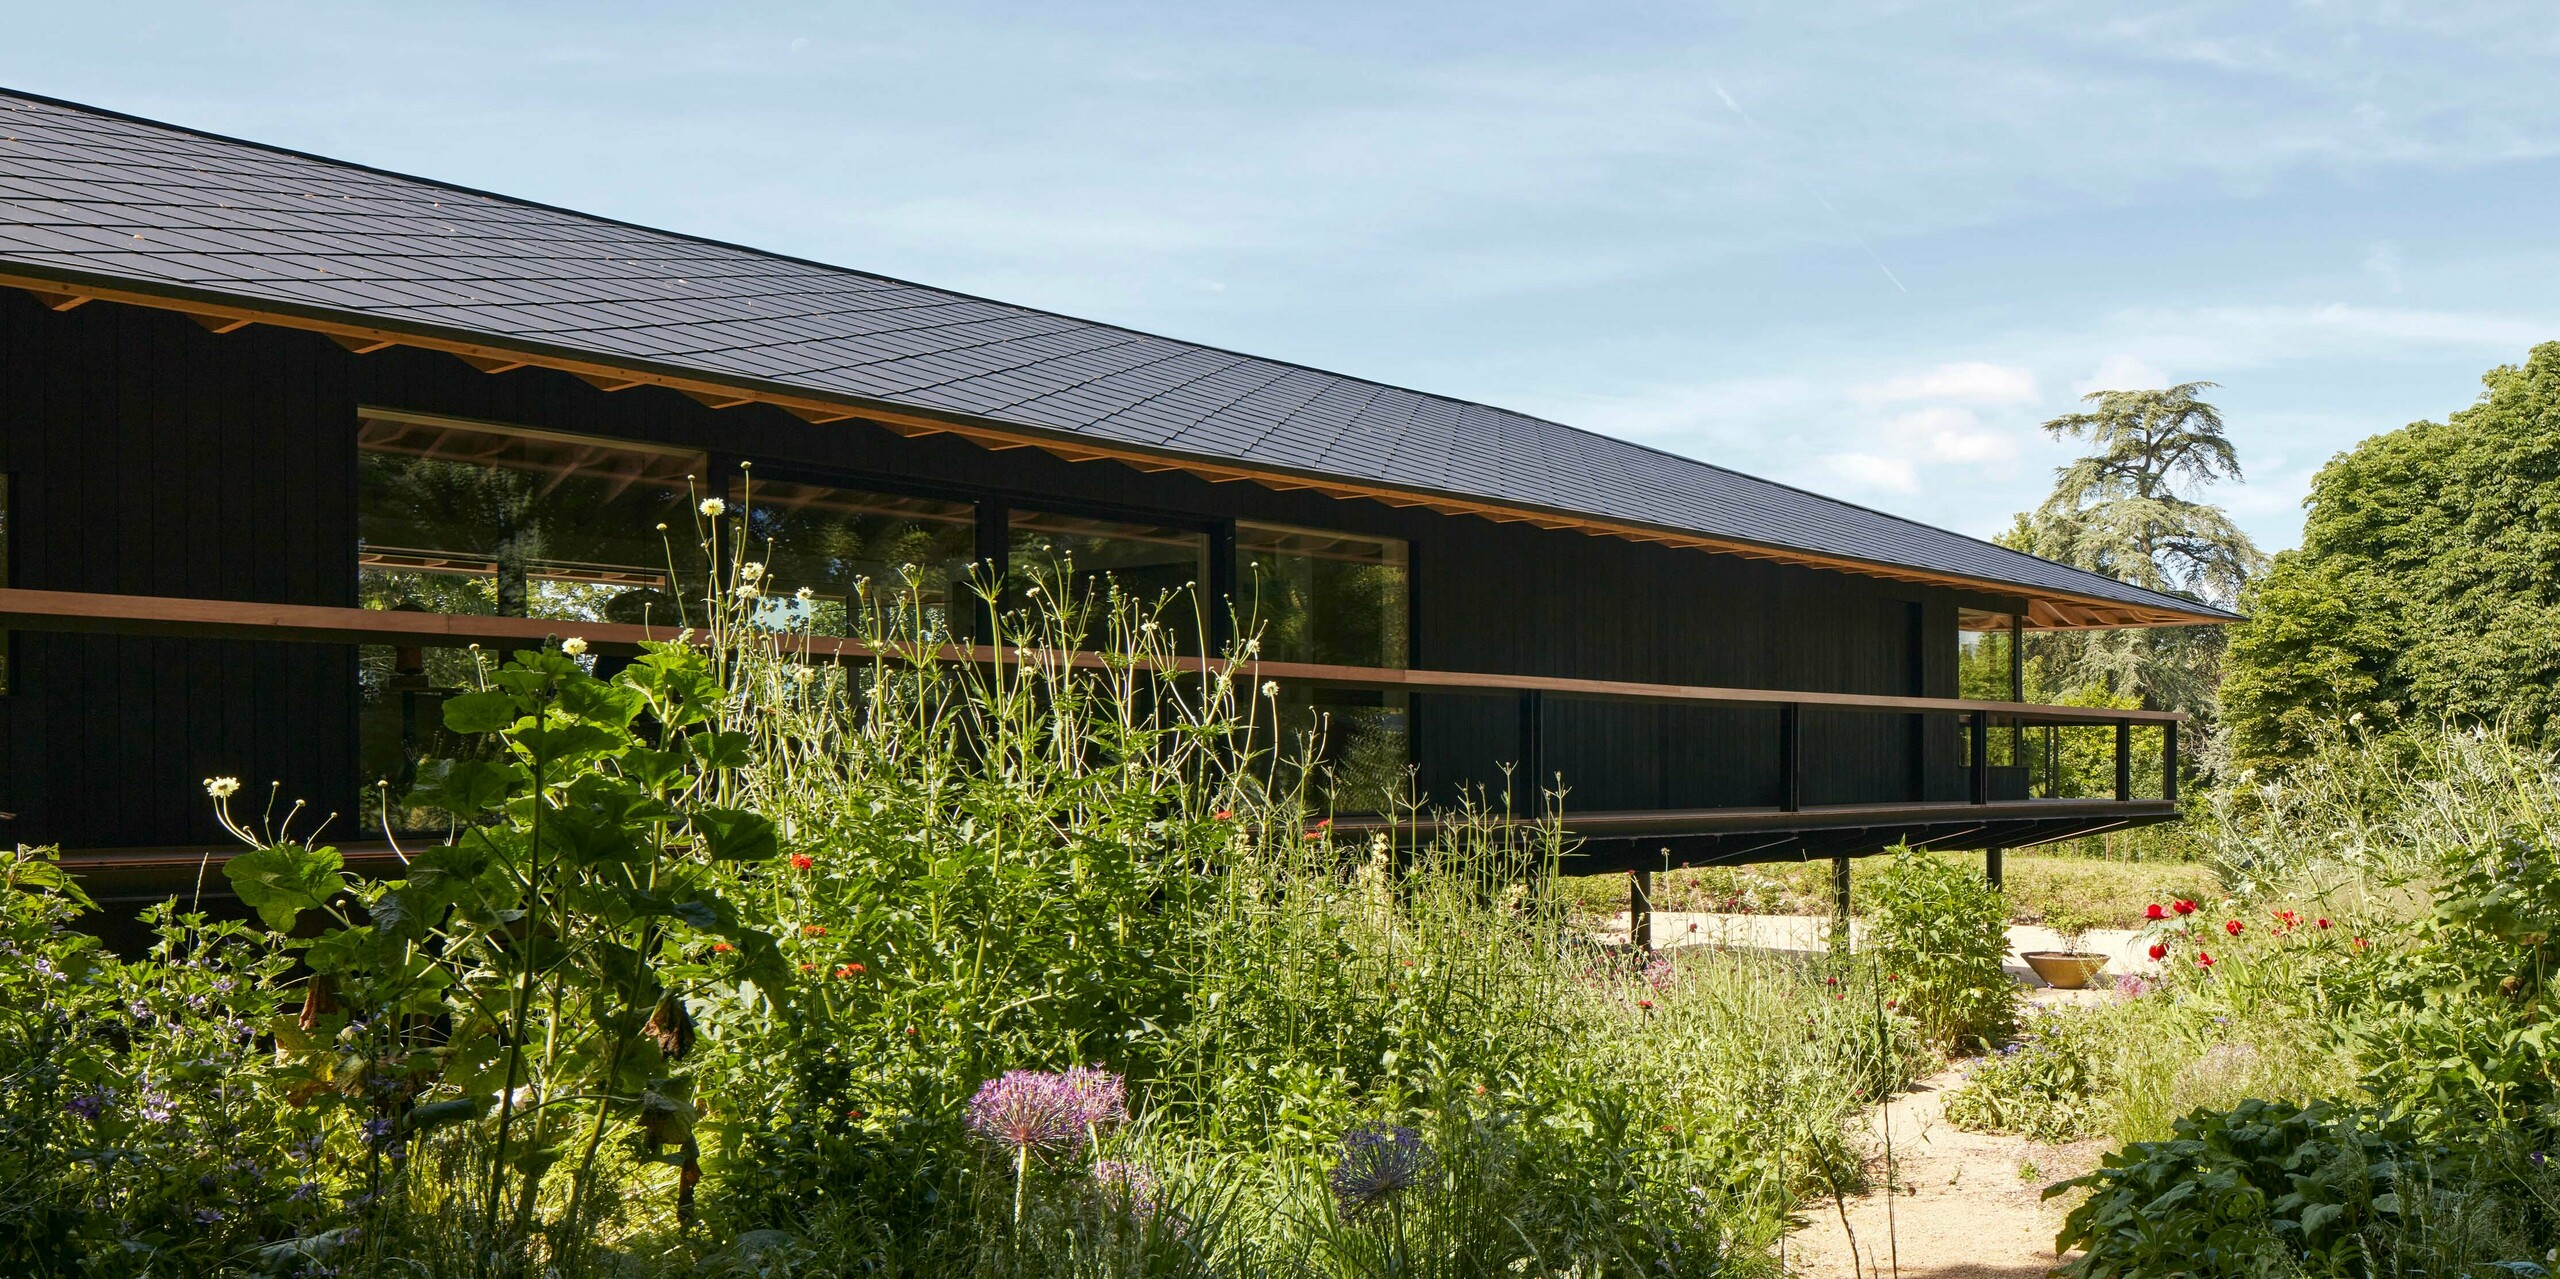 Ein Wohnprojekt mit PREFA Dachraute 44x44 in anthrazit in der Nähe Cirencester, UK, designed by Hamish & Lyons